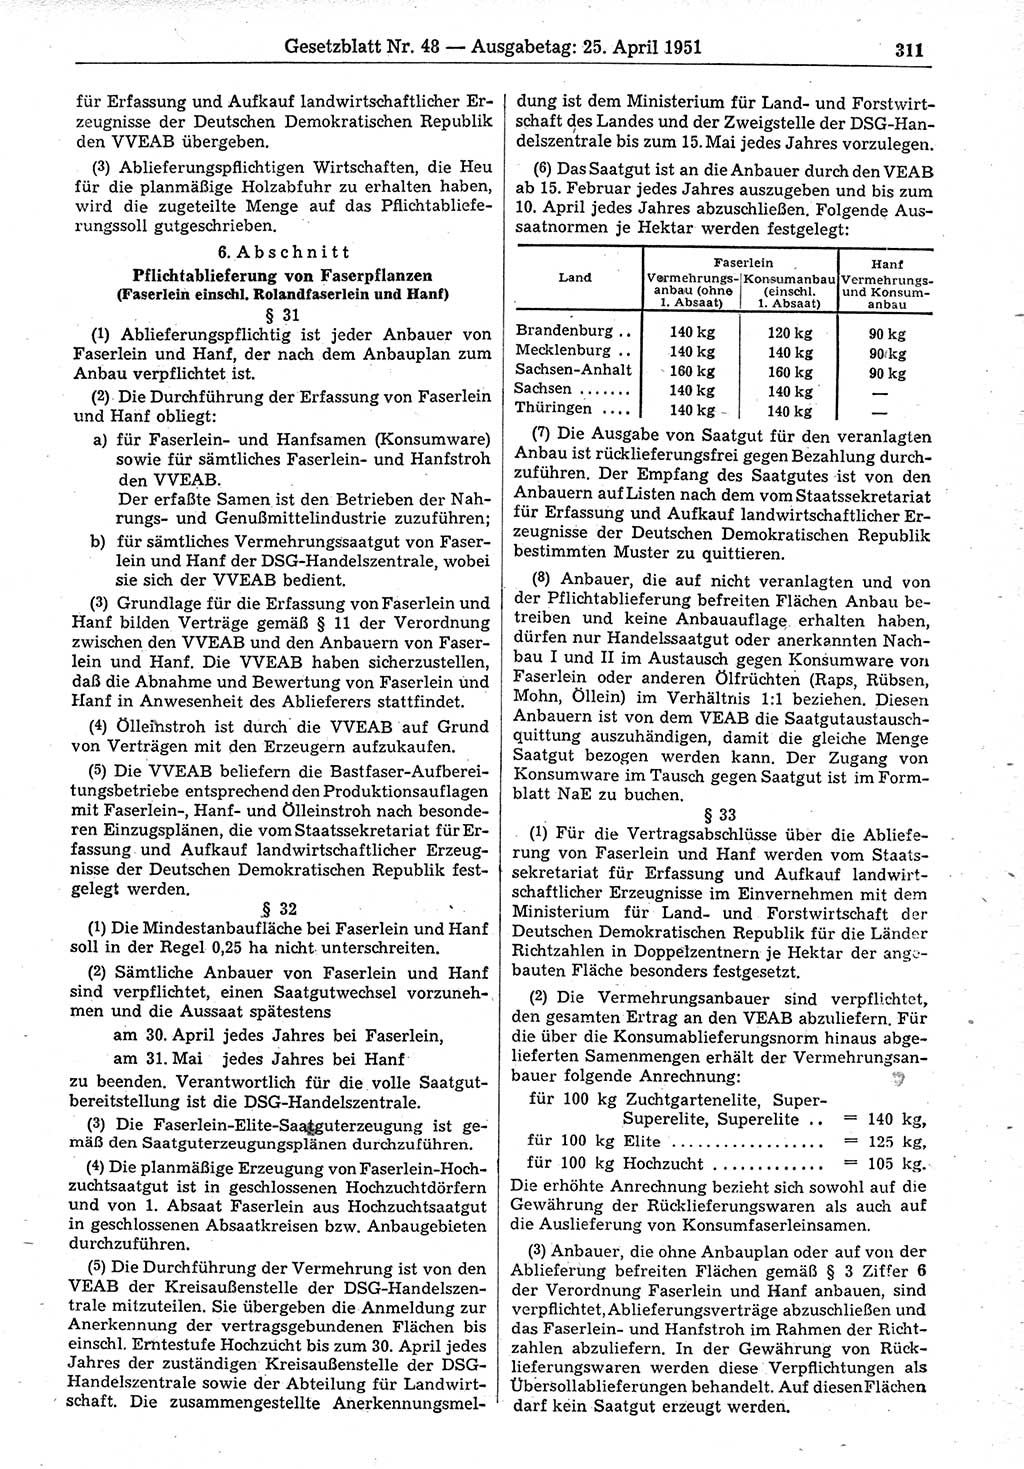 Gesetzblatt (GBl.) der Deutschen Demokratischen Republik (DDR) 1951, Seite 311 (GBl. DDR 1951, S. 311)